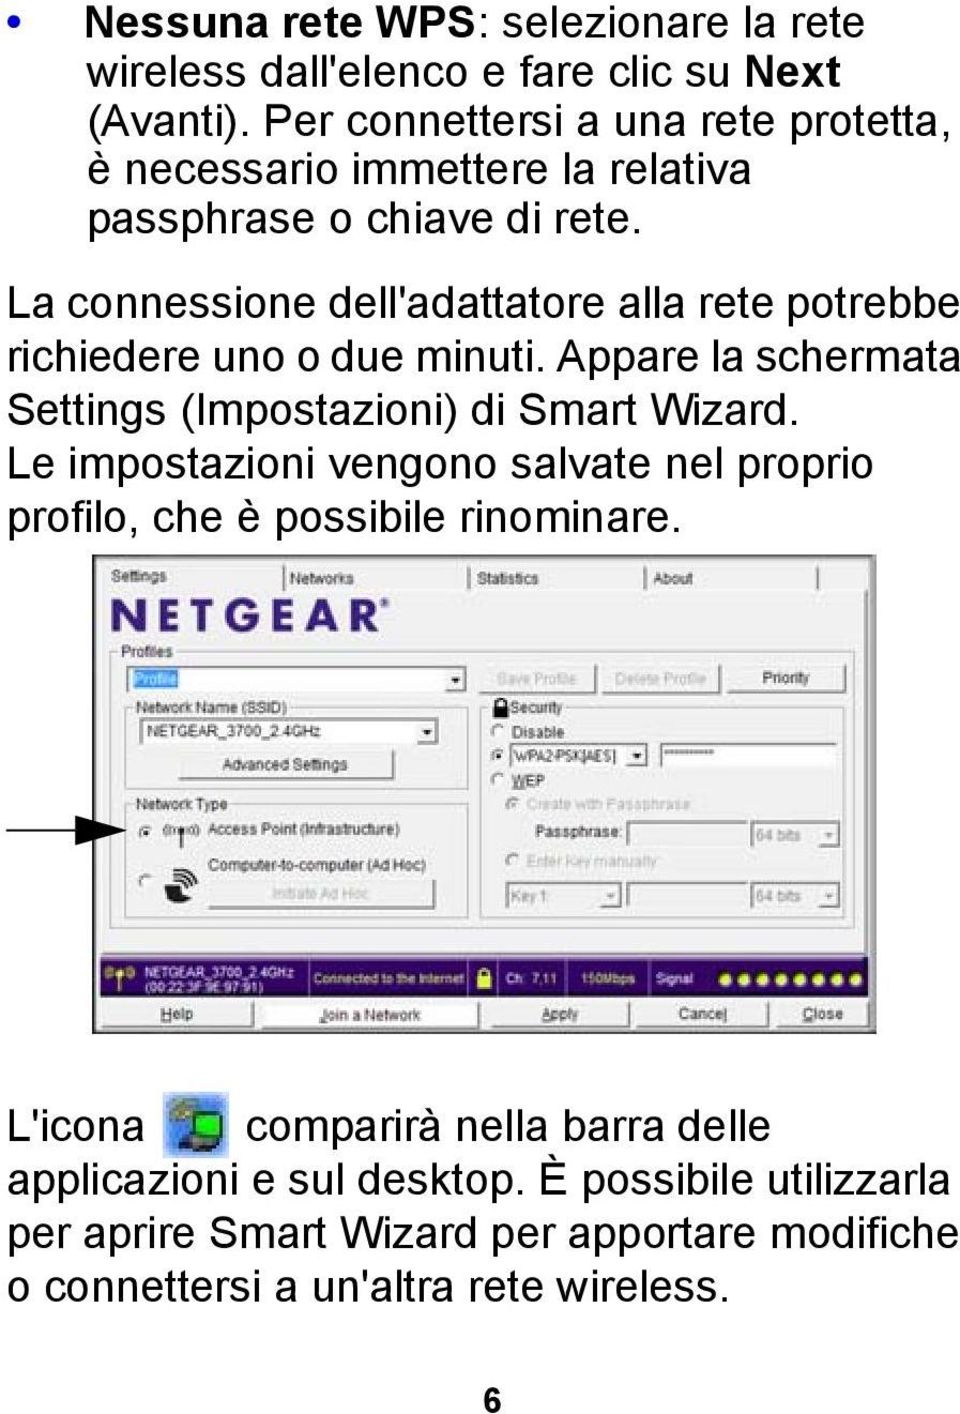 La connessione dell'adattatore alla rete potrebbe richiedere uno o due minuti. Appare la schermata Settings (Impostazioni) di Smart Wizard.